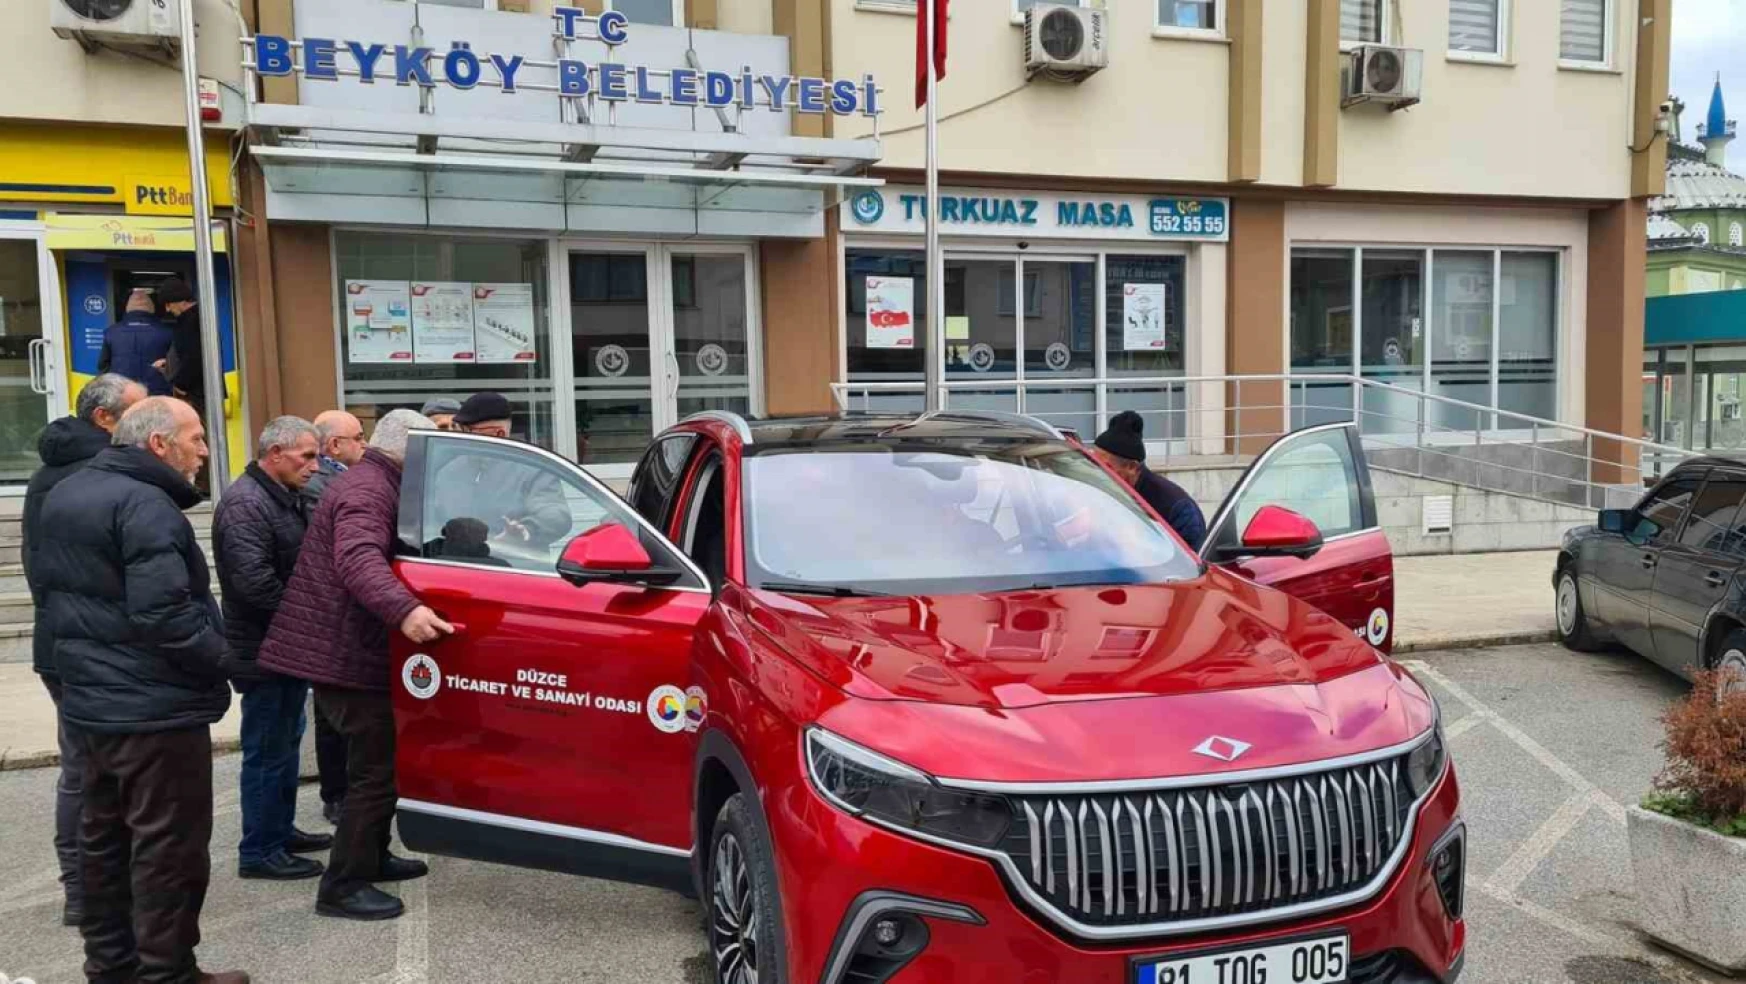 Türkiye'nin yerli otomobili TOGG'a Beyköy'de yoğun ilgi